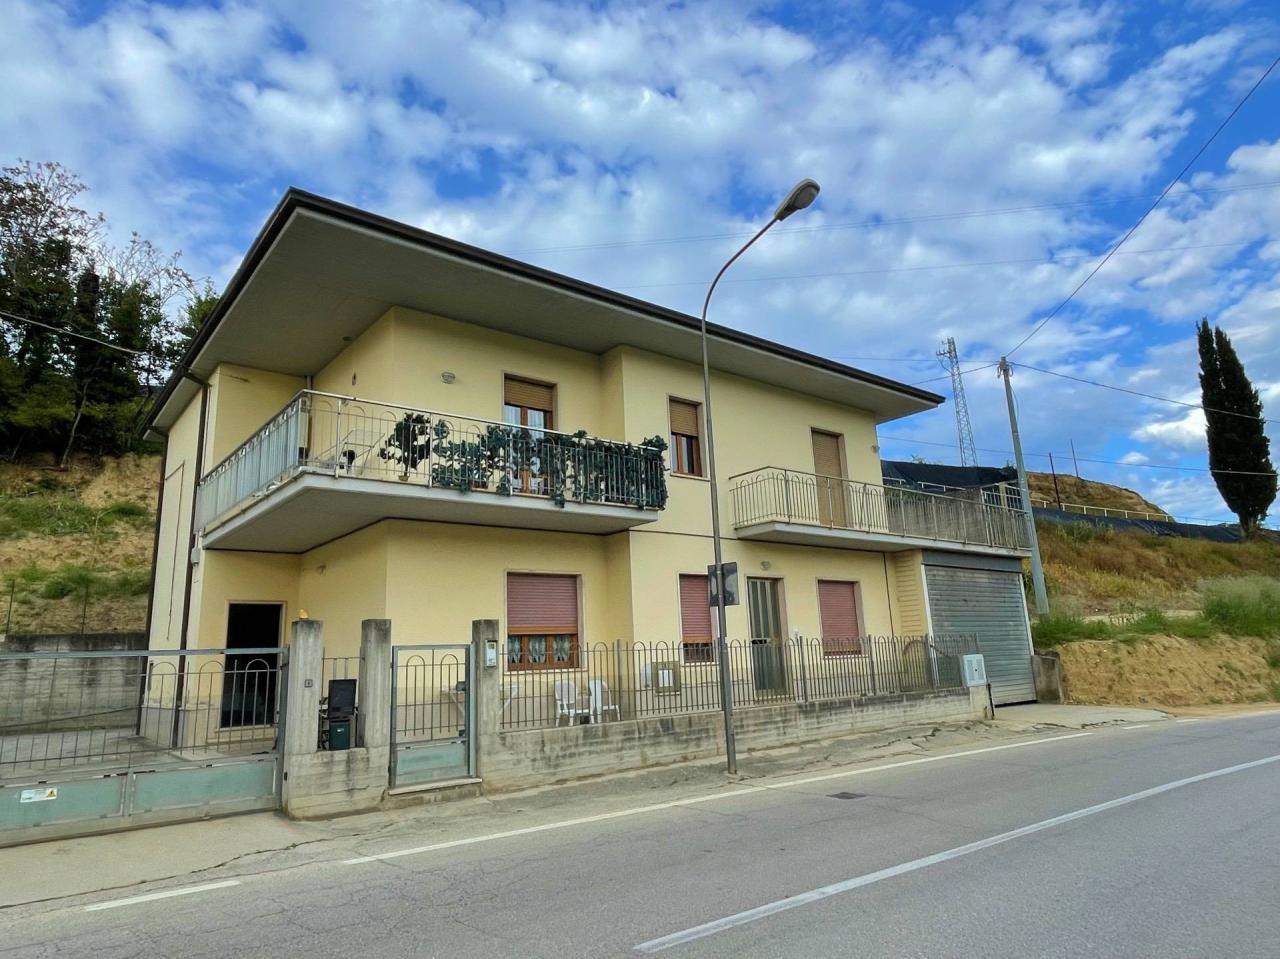 Sale Appartamento, San Benedetto del Tronto foto